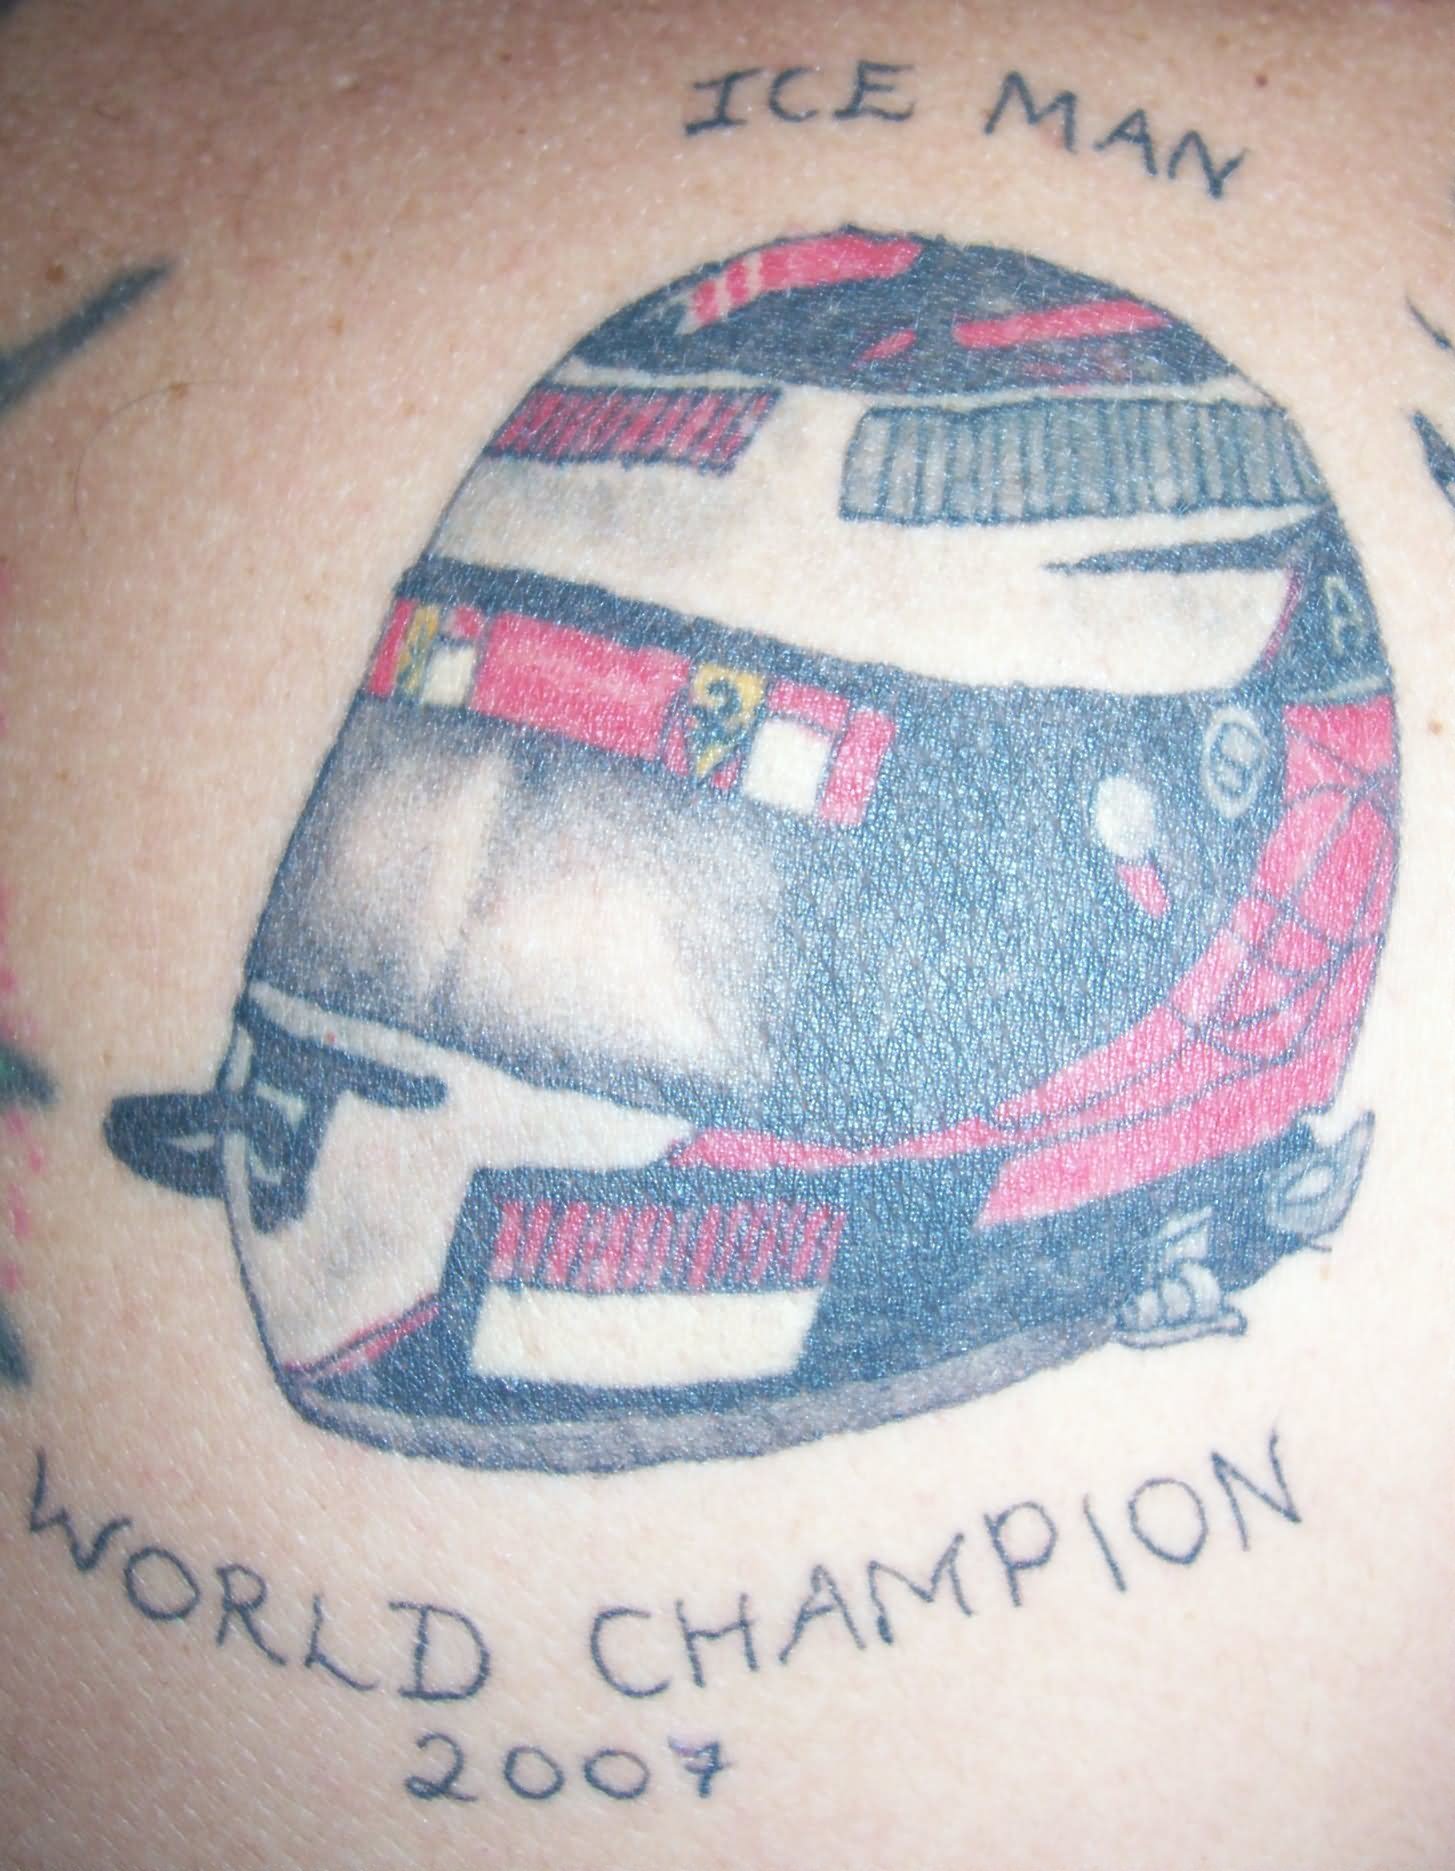 World Champion Sports Bike Helmet Tattoo